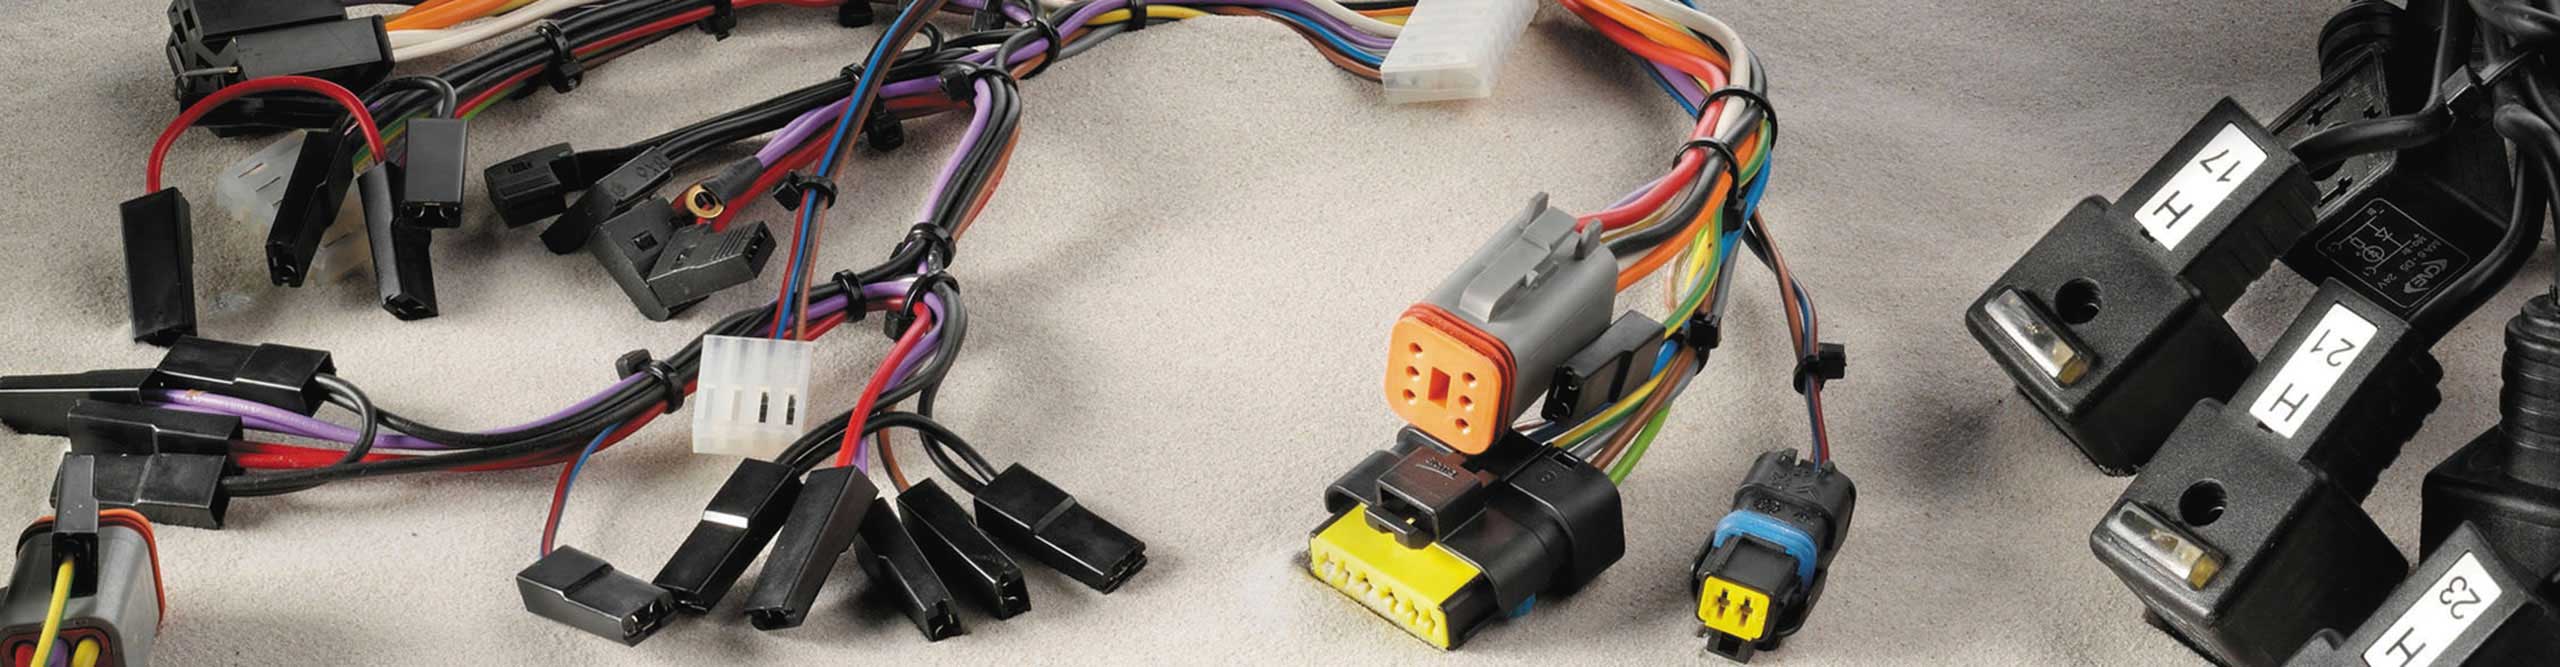 CAD per il cablaggio Elettrico, la soluzione Cabling SDProget